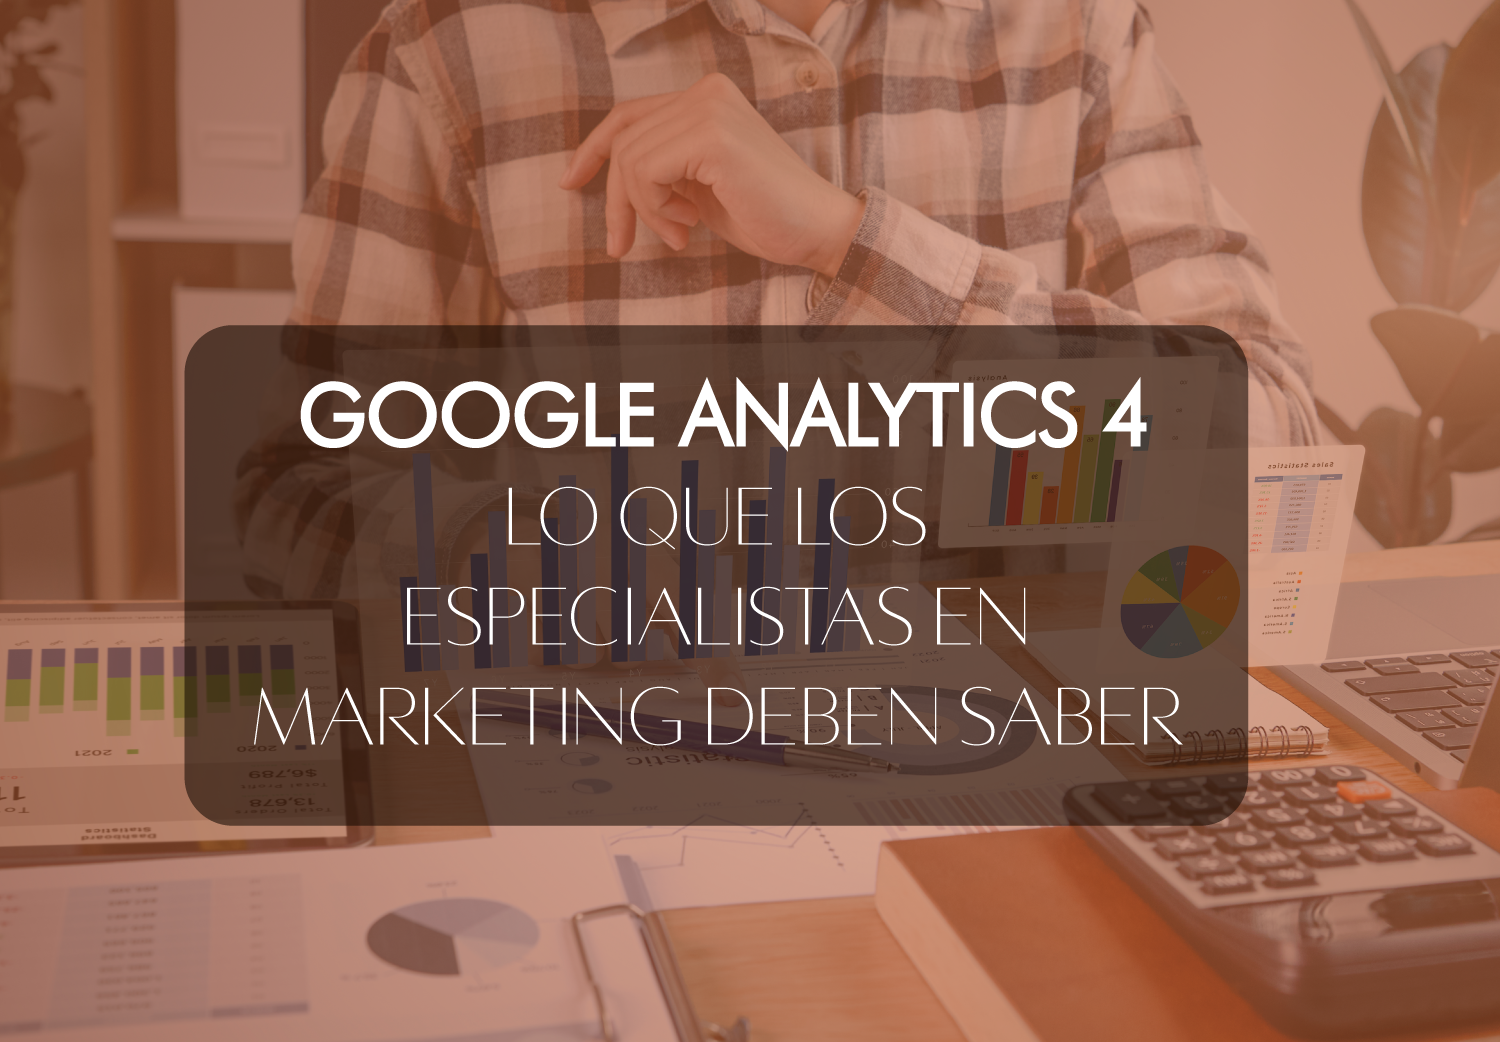 Lo que los especialistas en marketing deben saber sobre Google Analytics 4